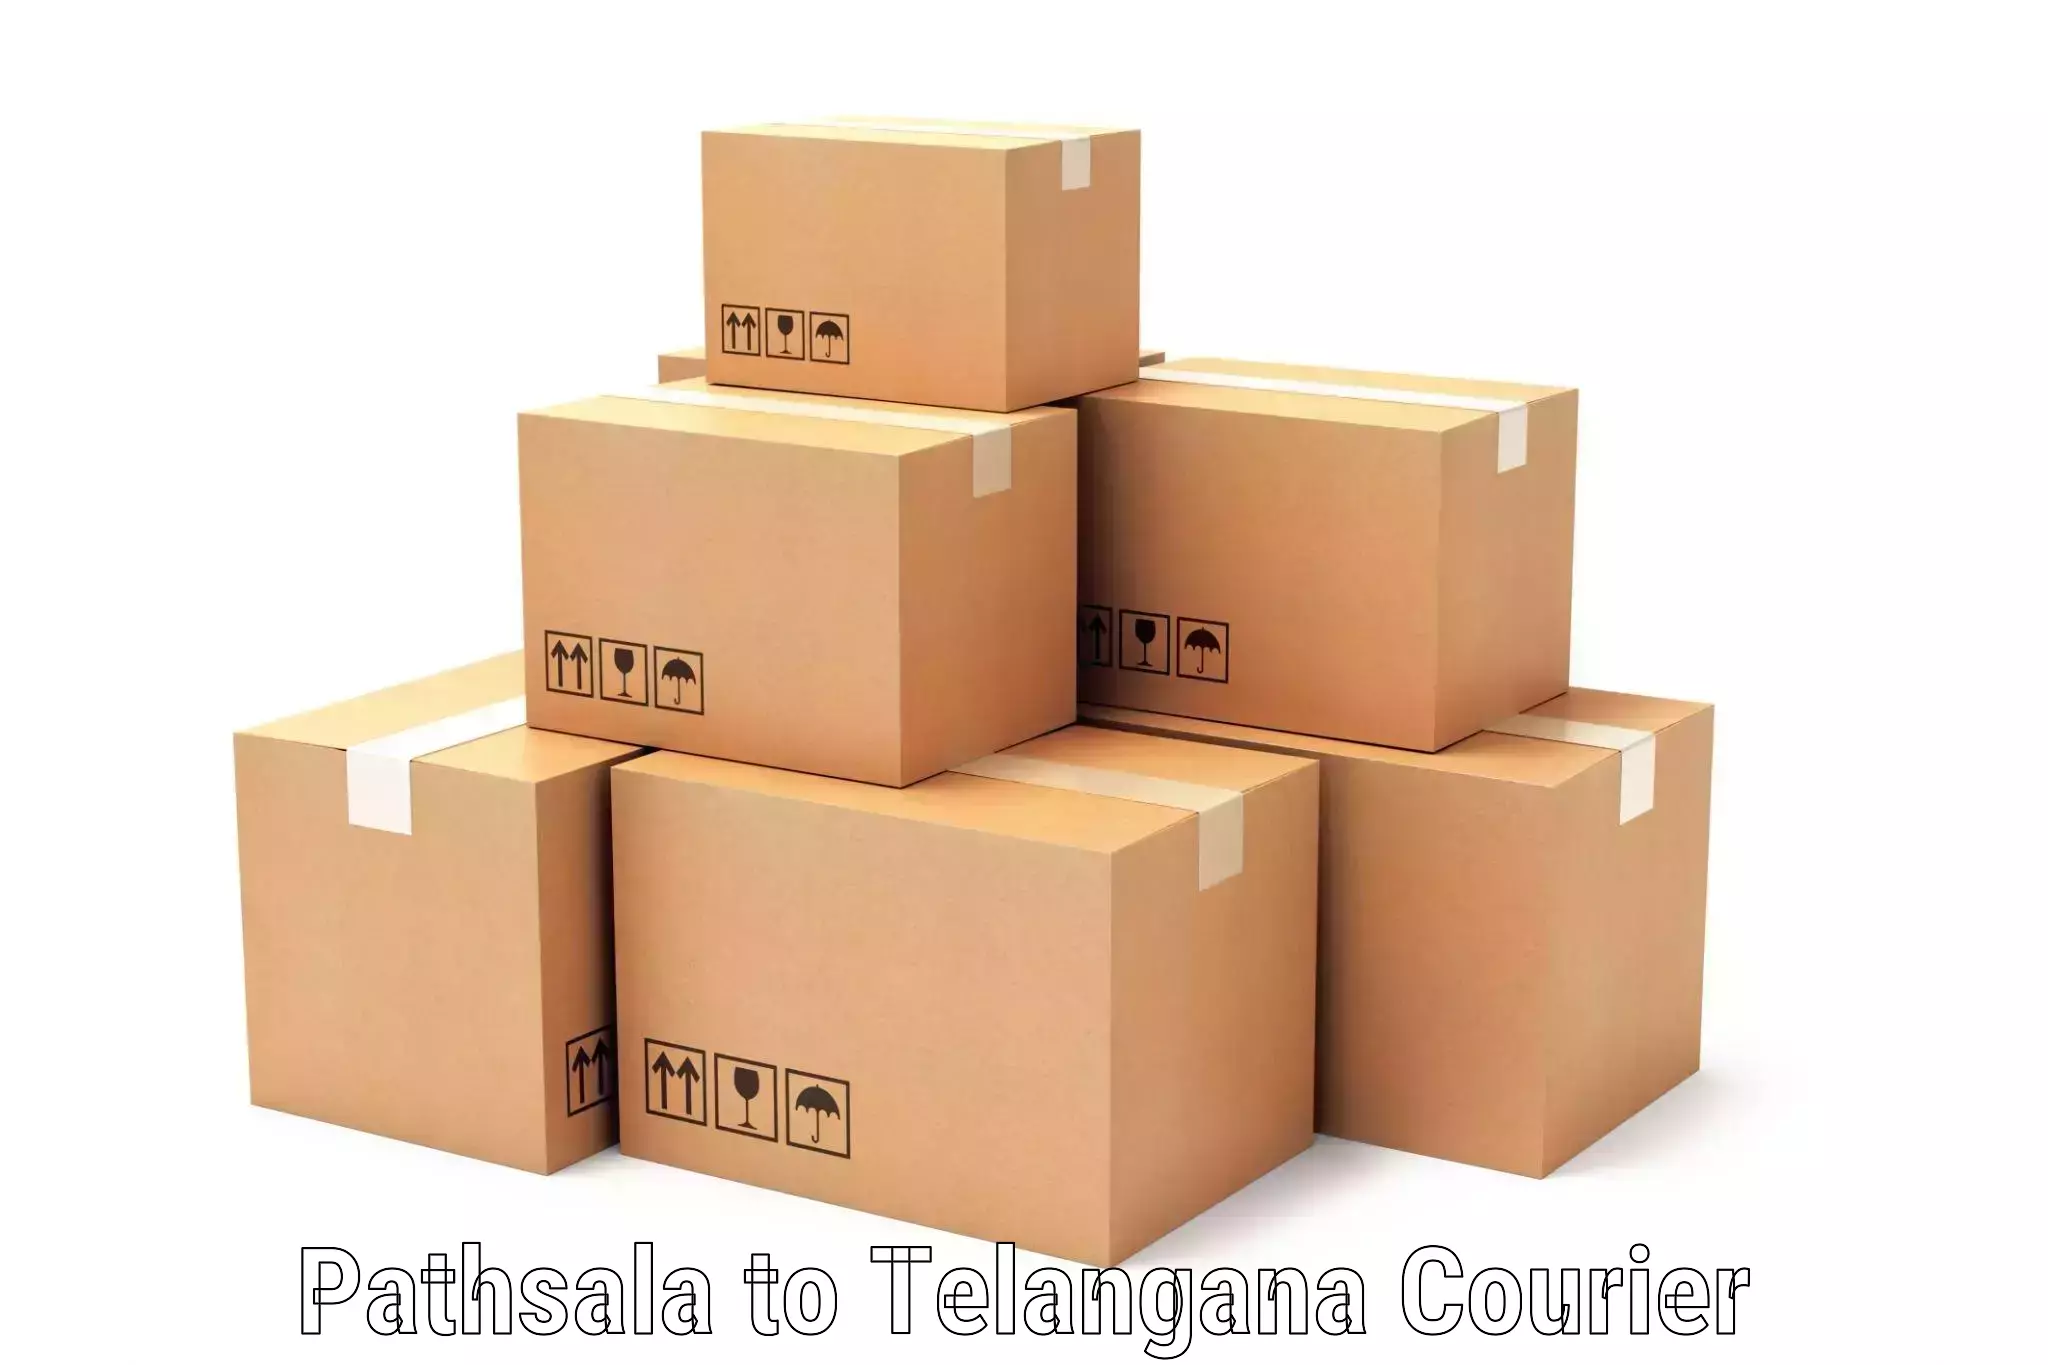 Cash on delivery service Pathsala to Yerrupalem